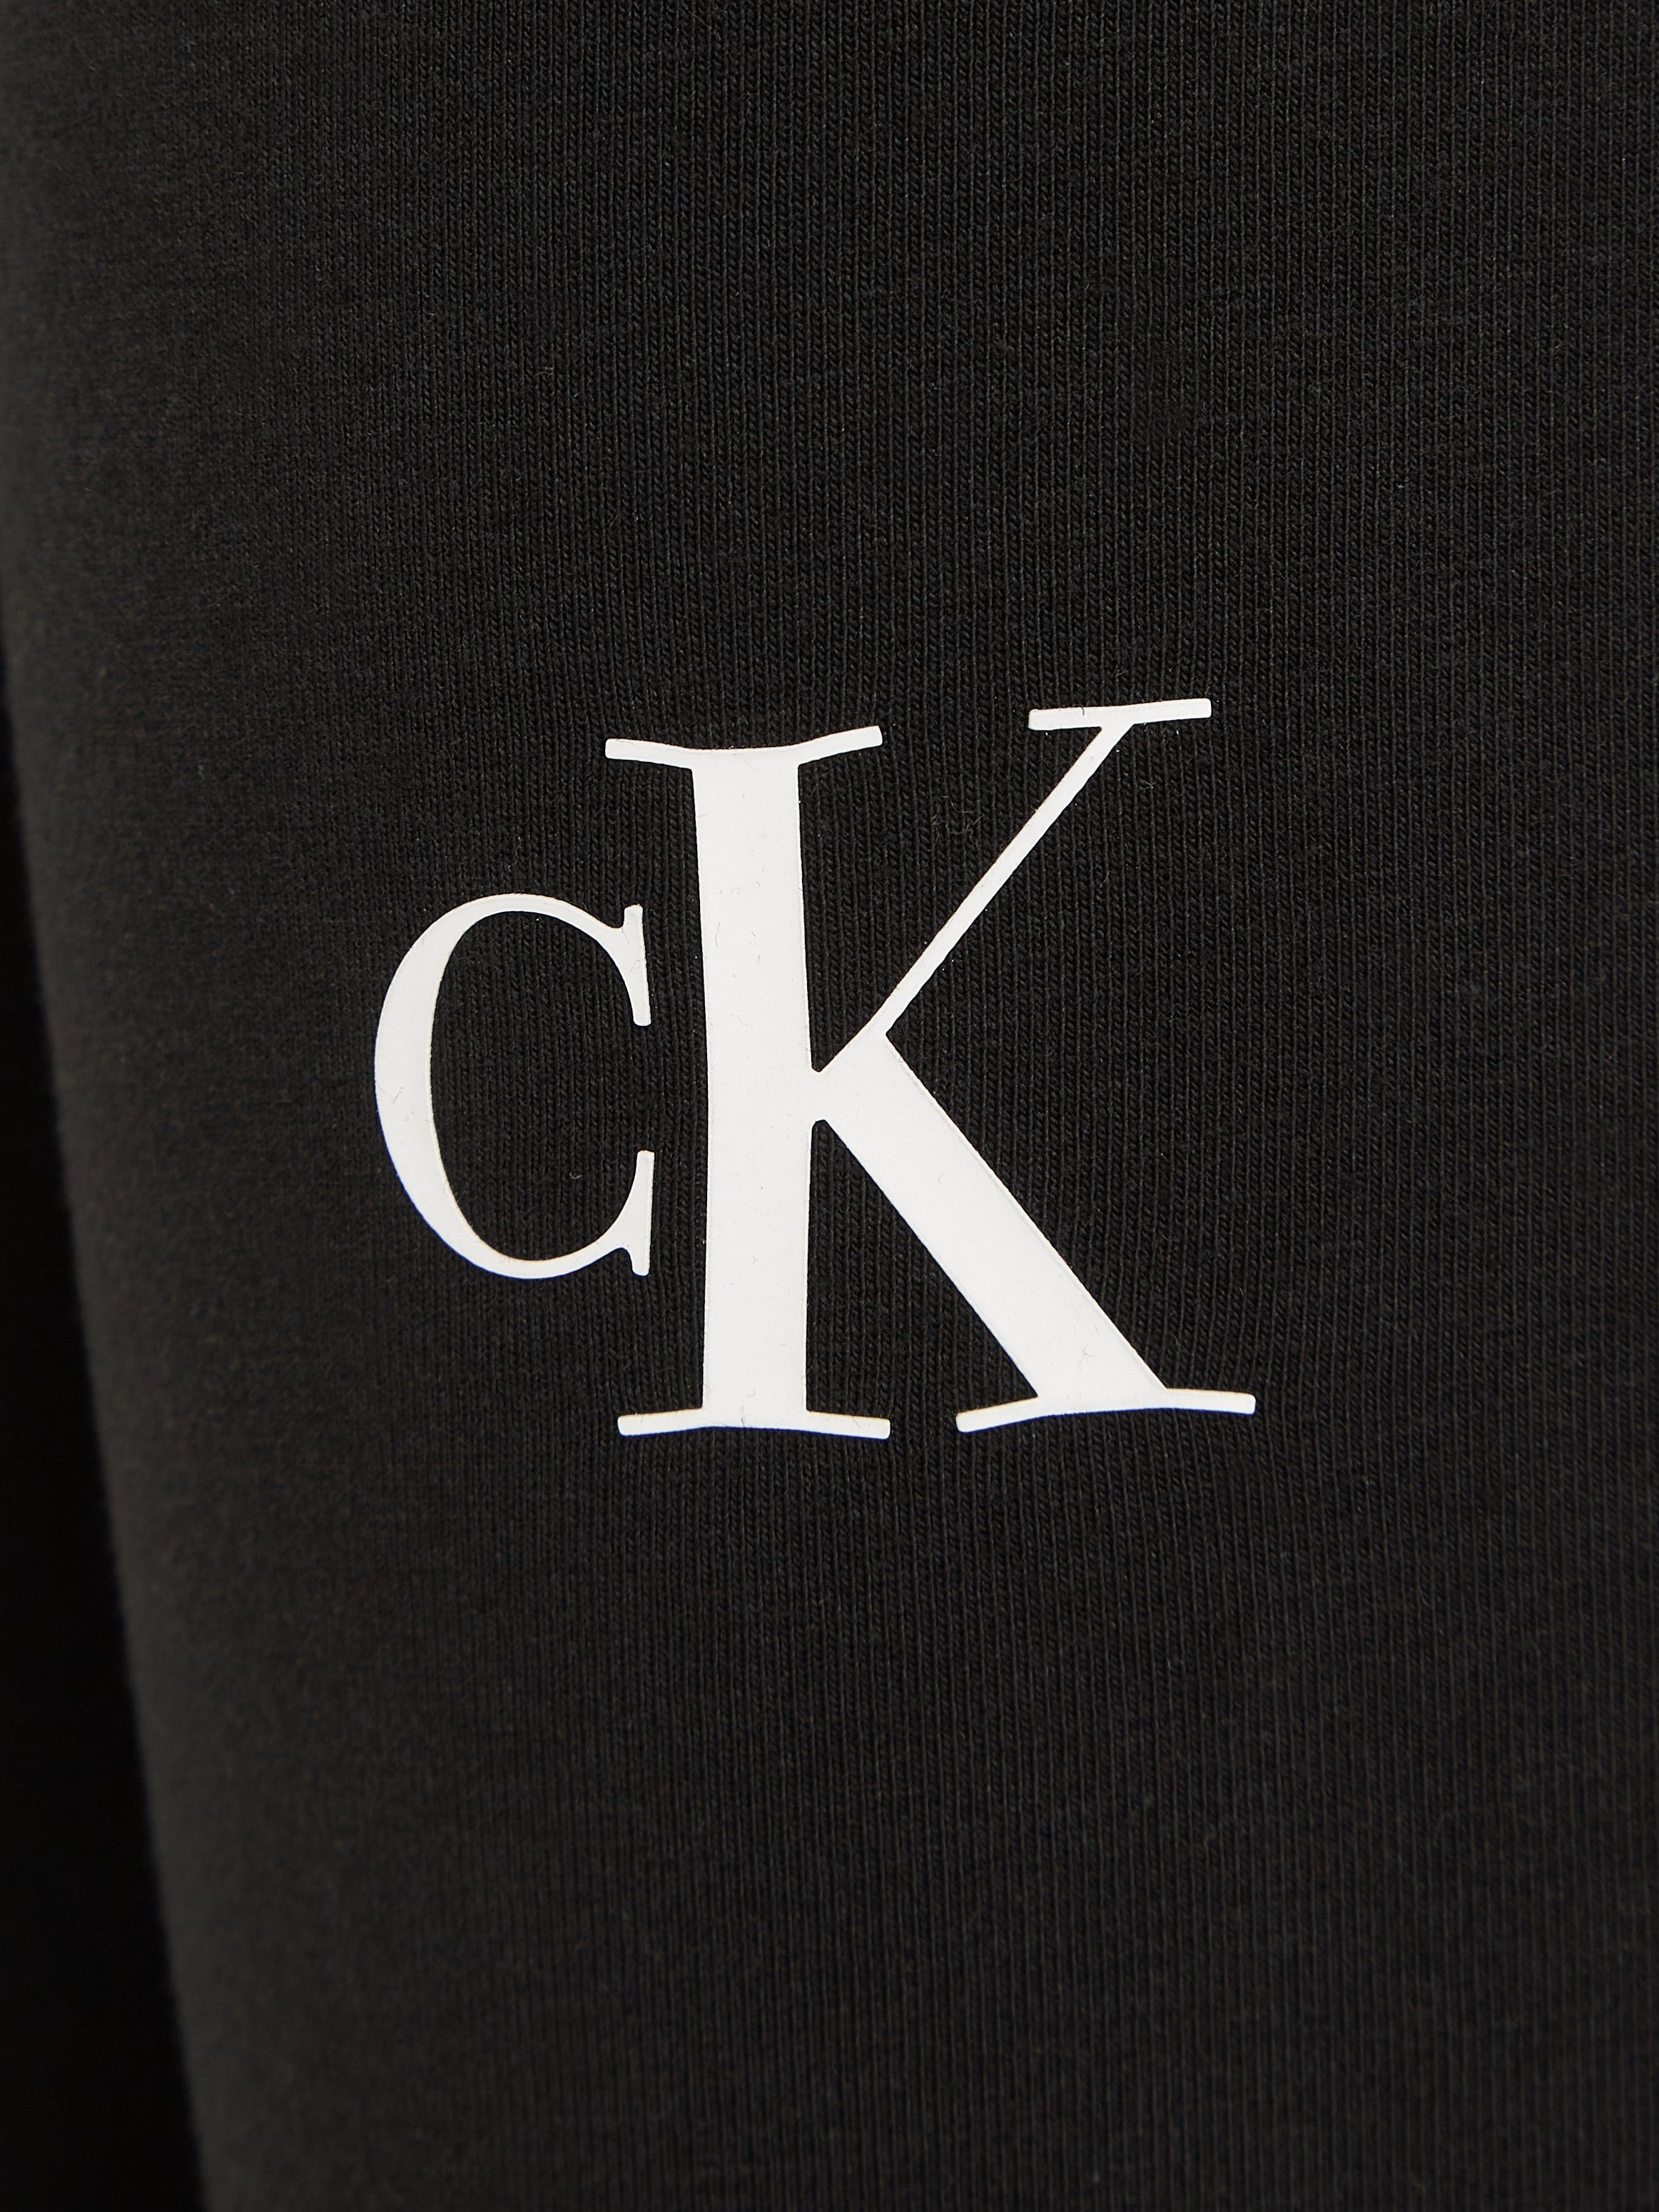 Calvin Klein Jeans Leggings CK LOGO mit LEGGING Logodruck